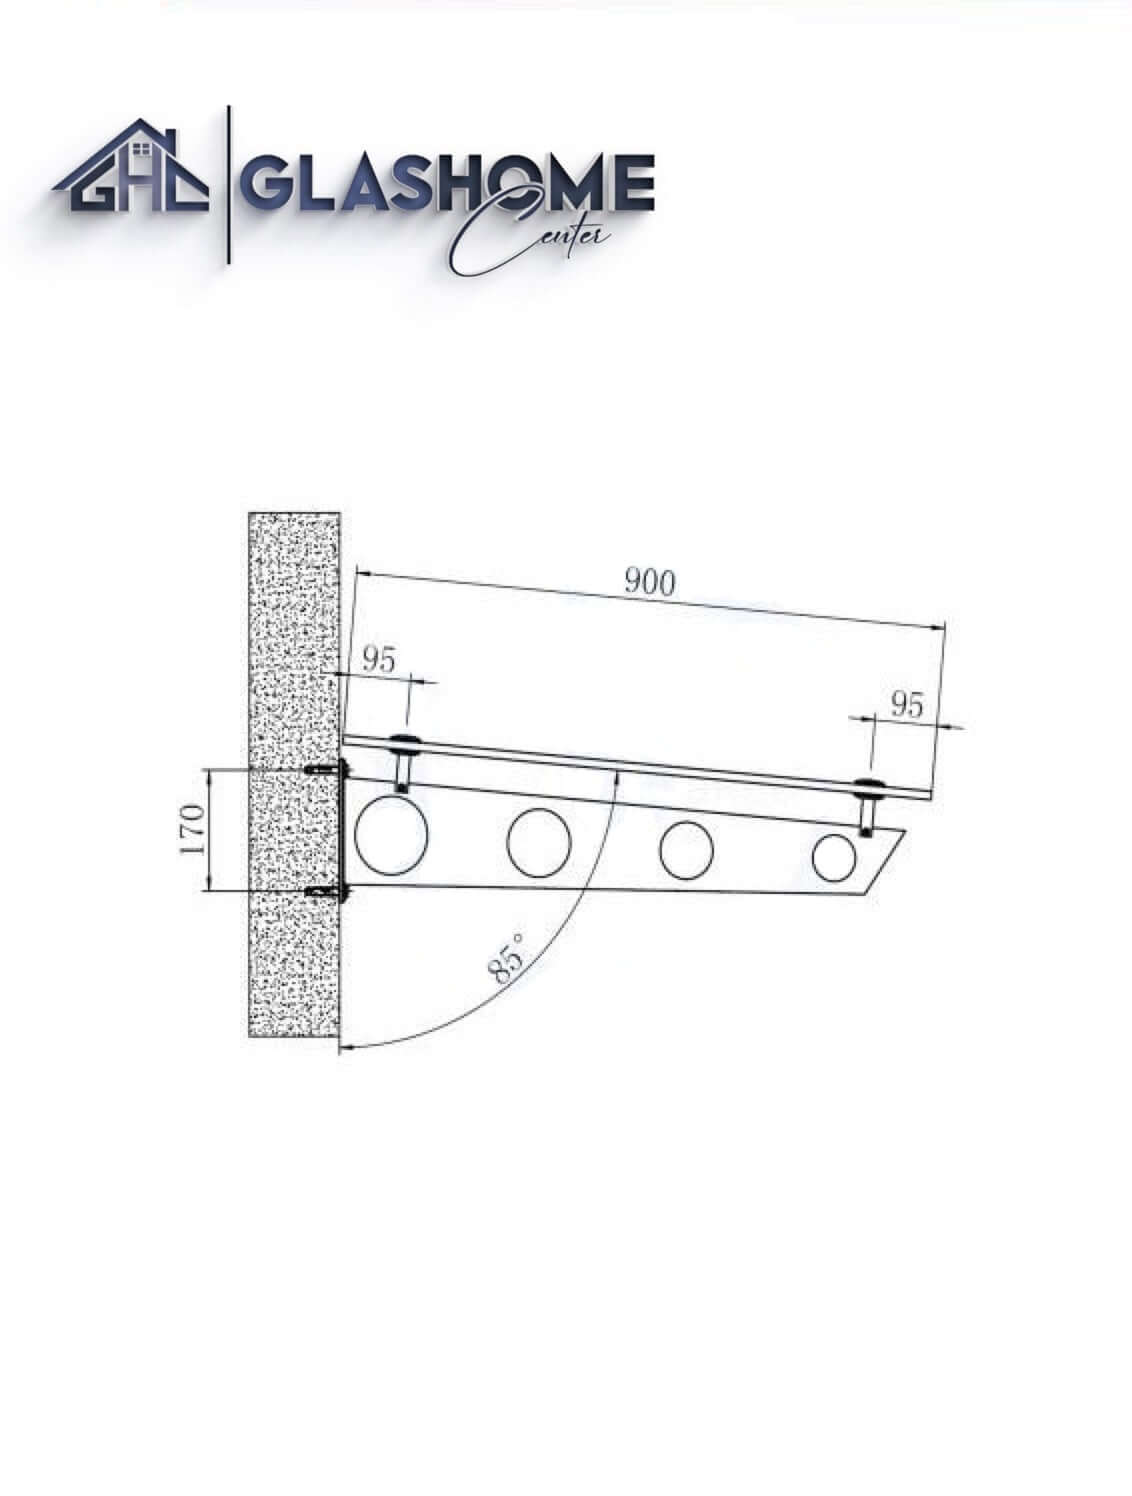 GlasHomeCenter - Glasvordach - Milchglas - 200x90cm - 13.1mm VSG - inkl. 2 Edelstahlhalterungen Variante "Stockholm"